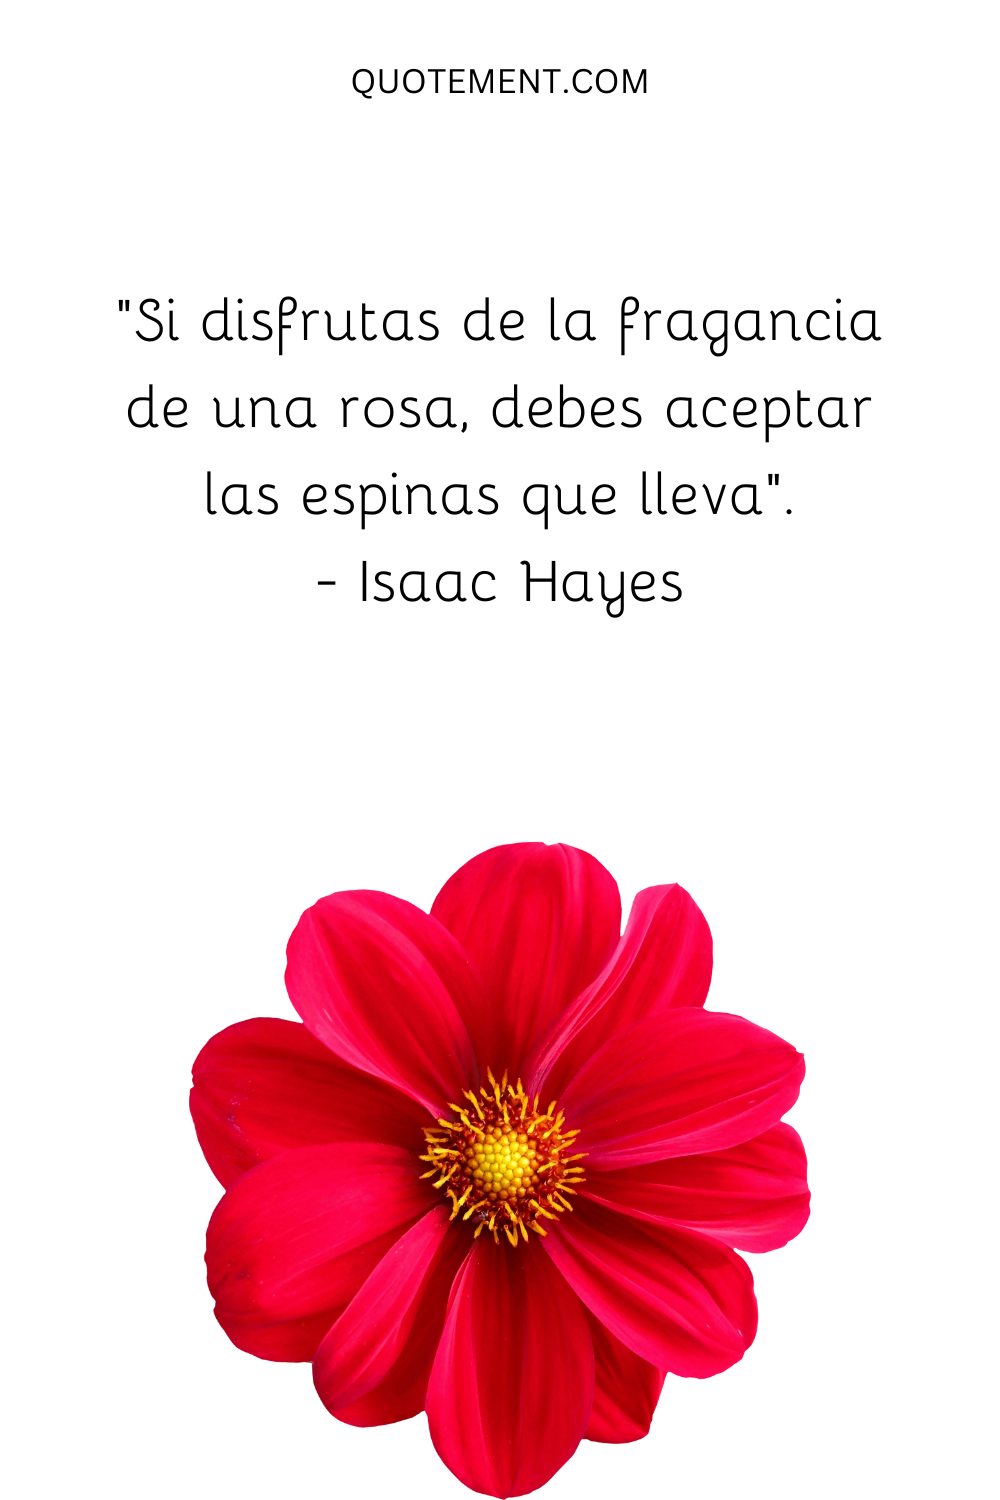 "Si disfrutas de la fragancia de una rosa, debes aceptar las espinas que lleva". - Isaac Hayes